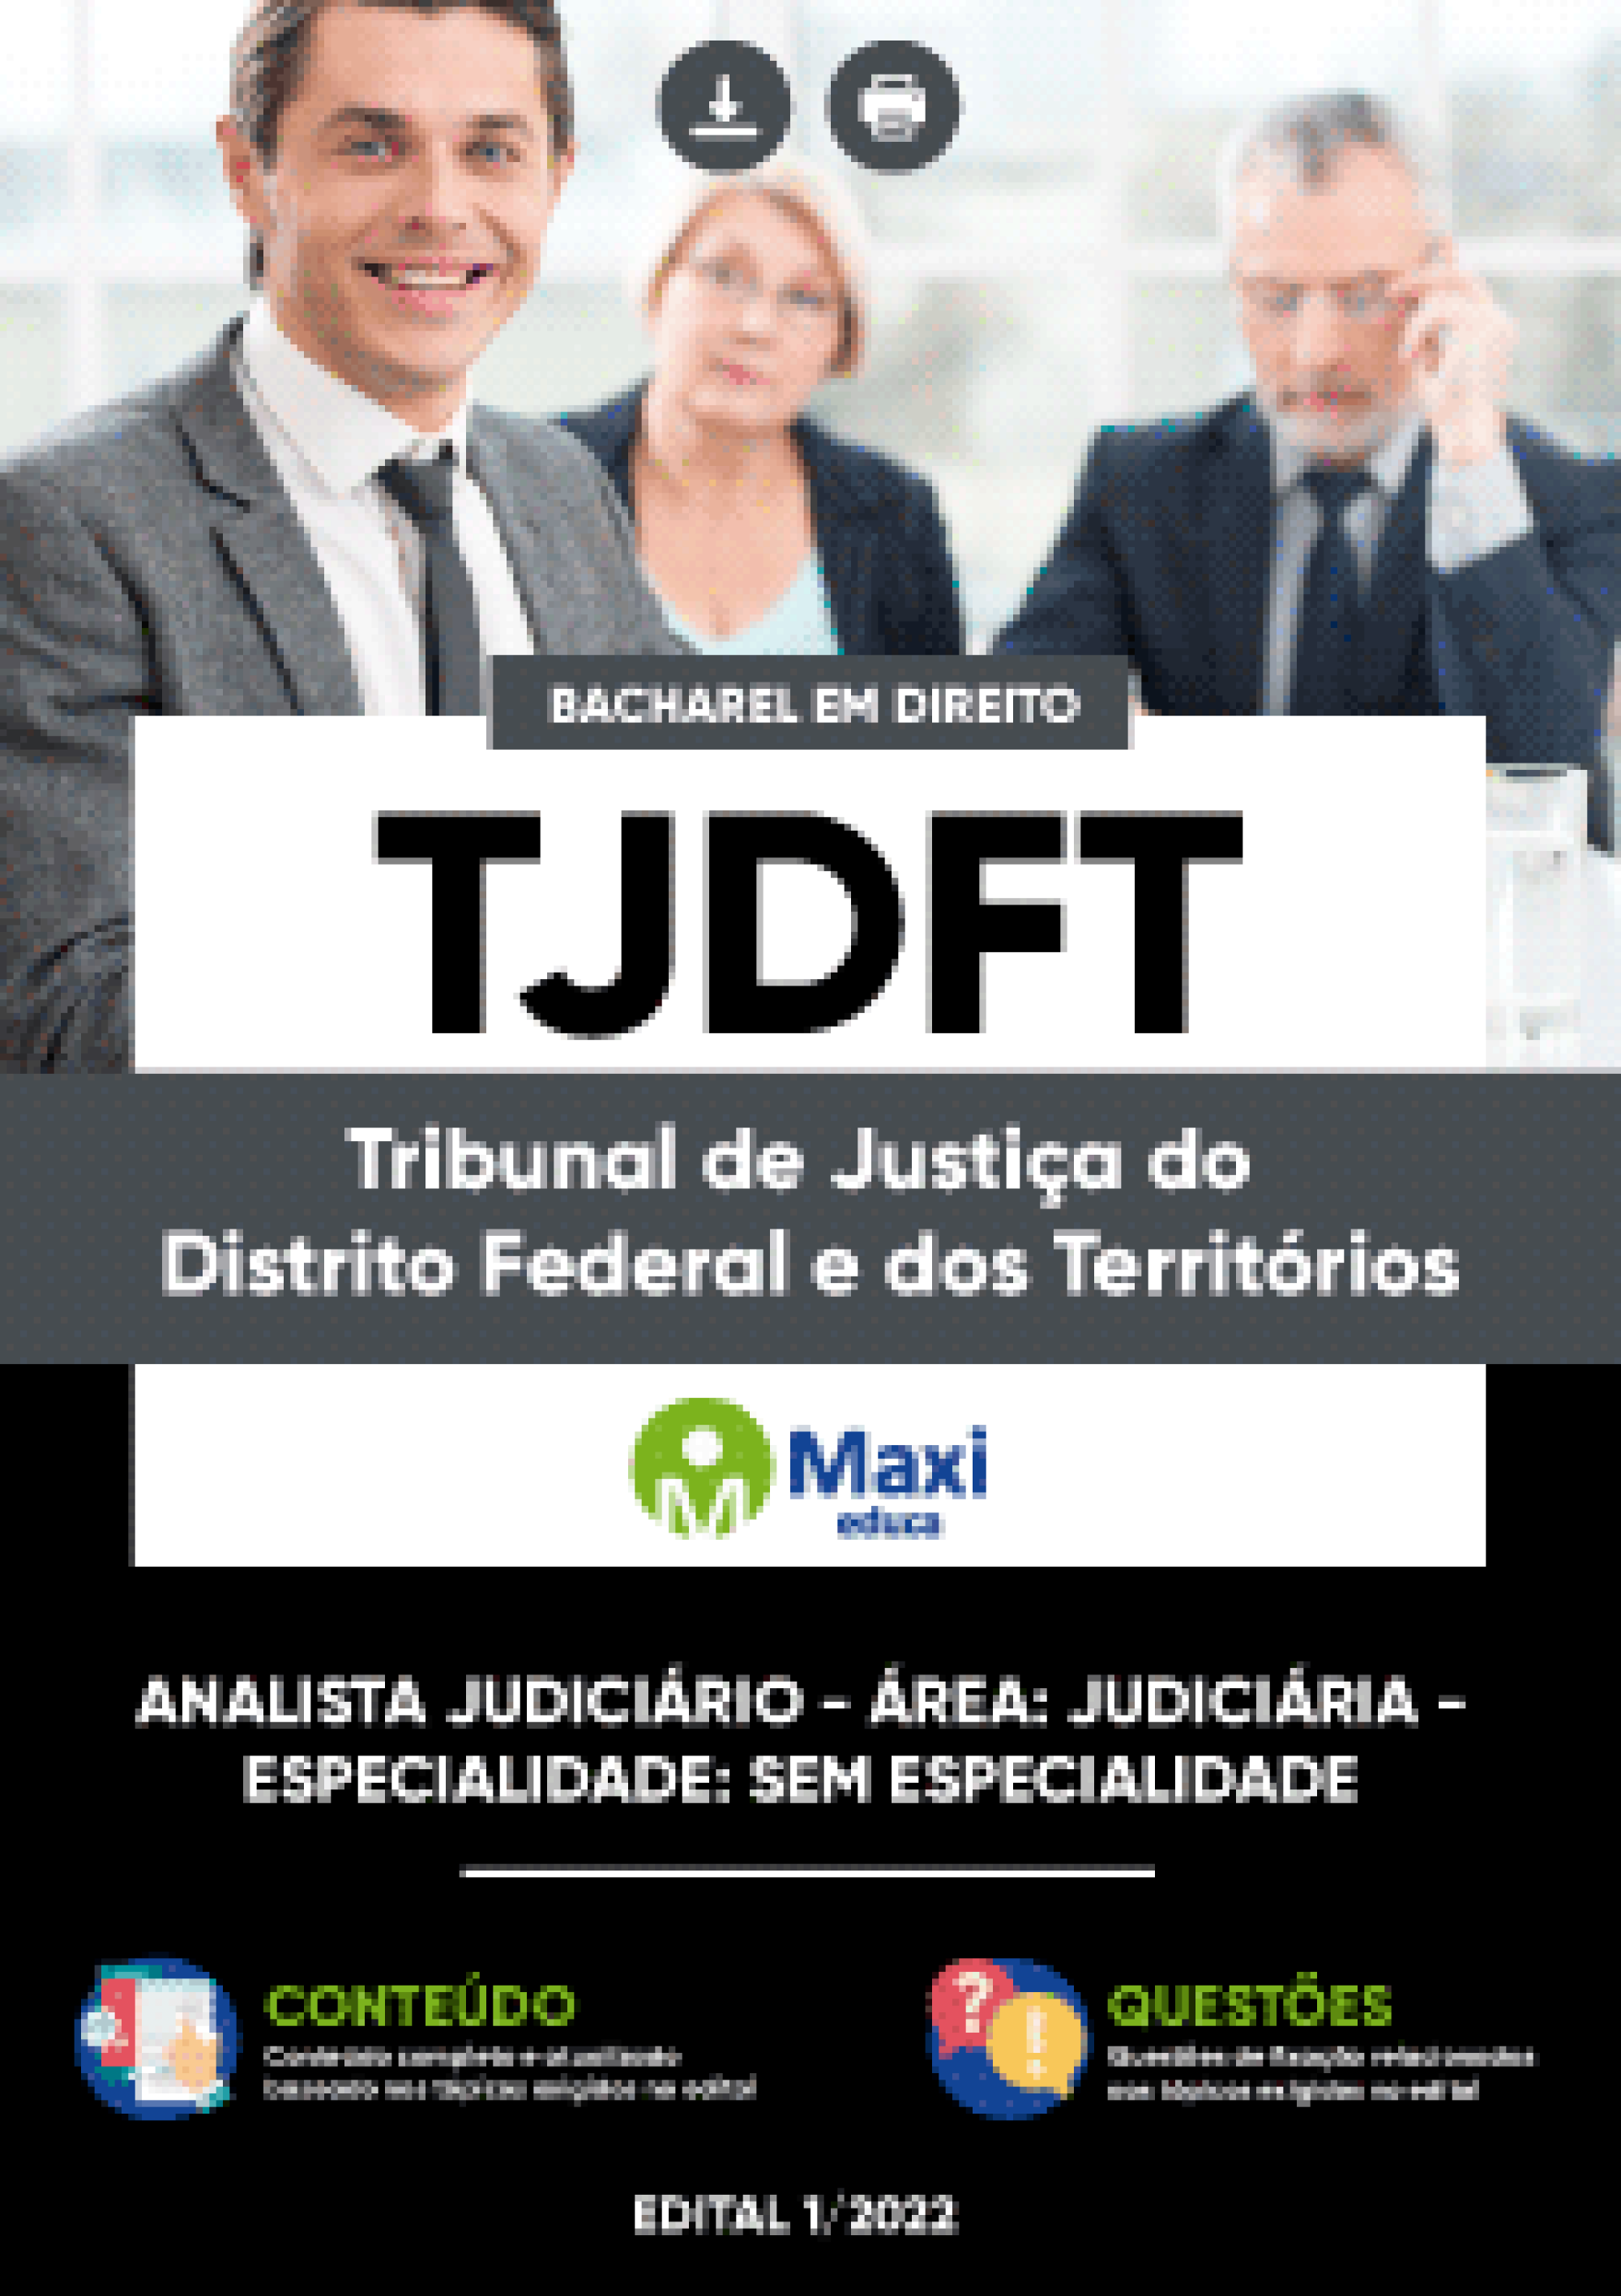 Apostila Digital em PDF do Tribunal de Justiça do Distrito Federal e dos Territórios - TJDFT